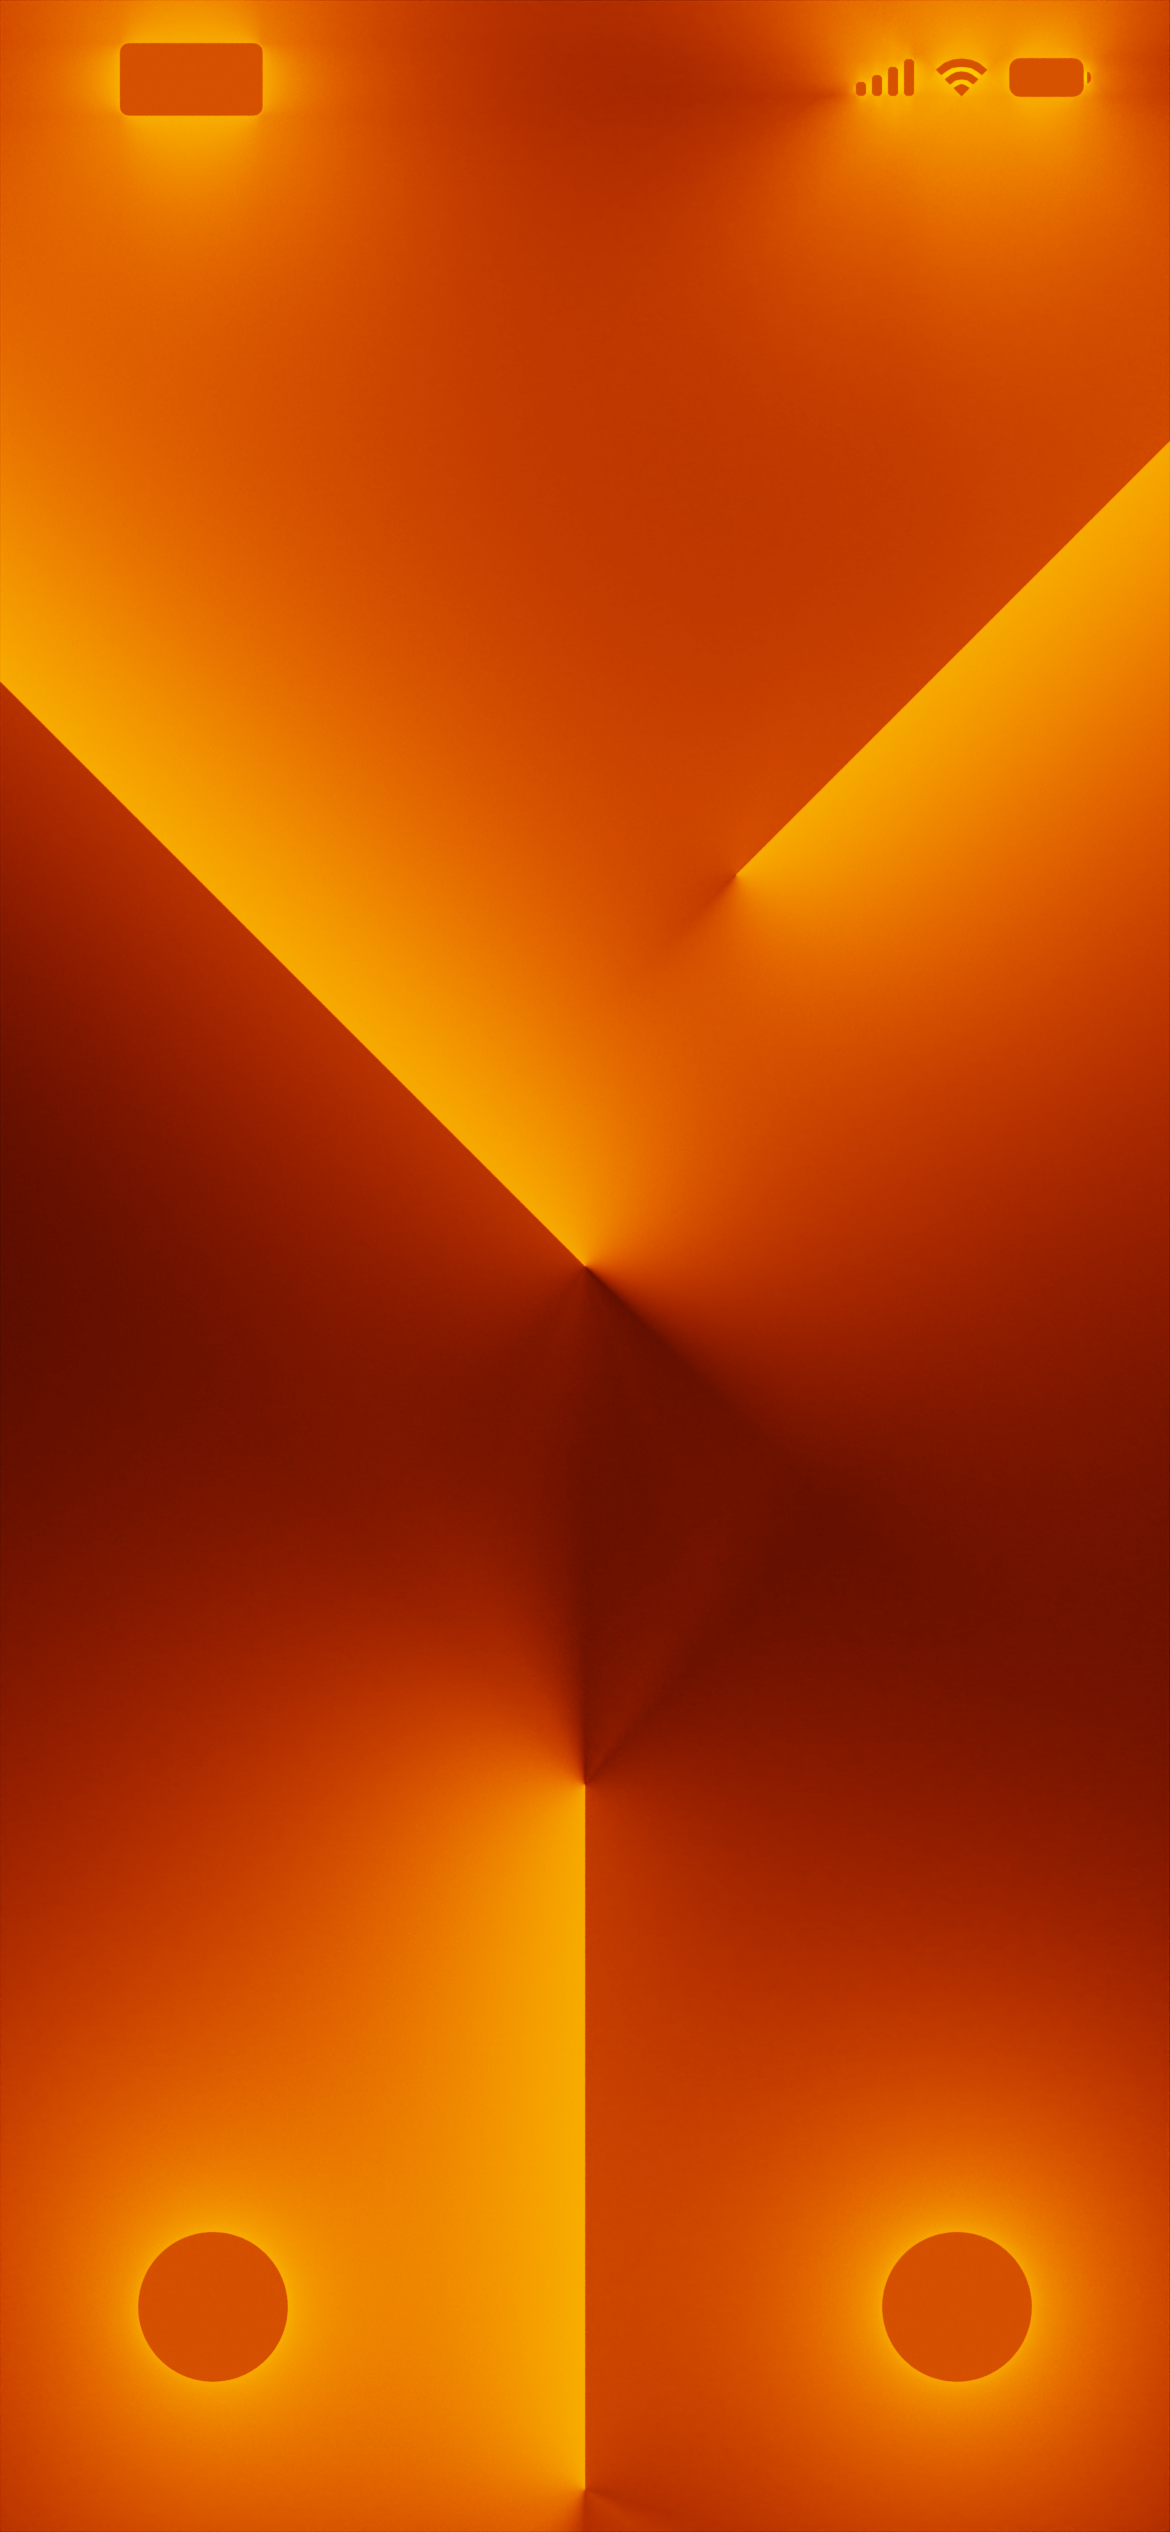 iPhone 13/Pro fan art wallpaper (orange) by batsnailofficial on DeviantArt